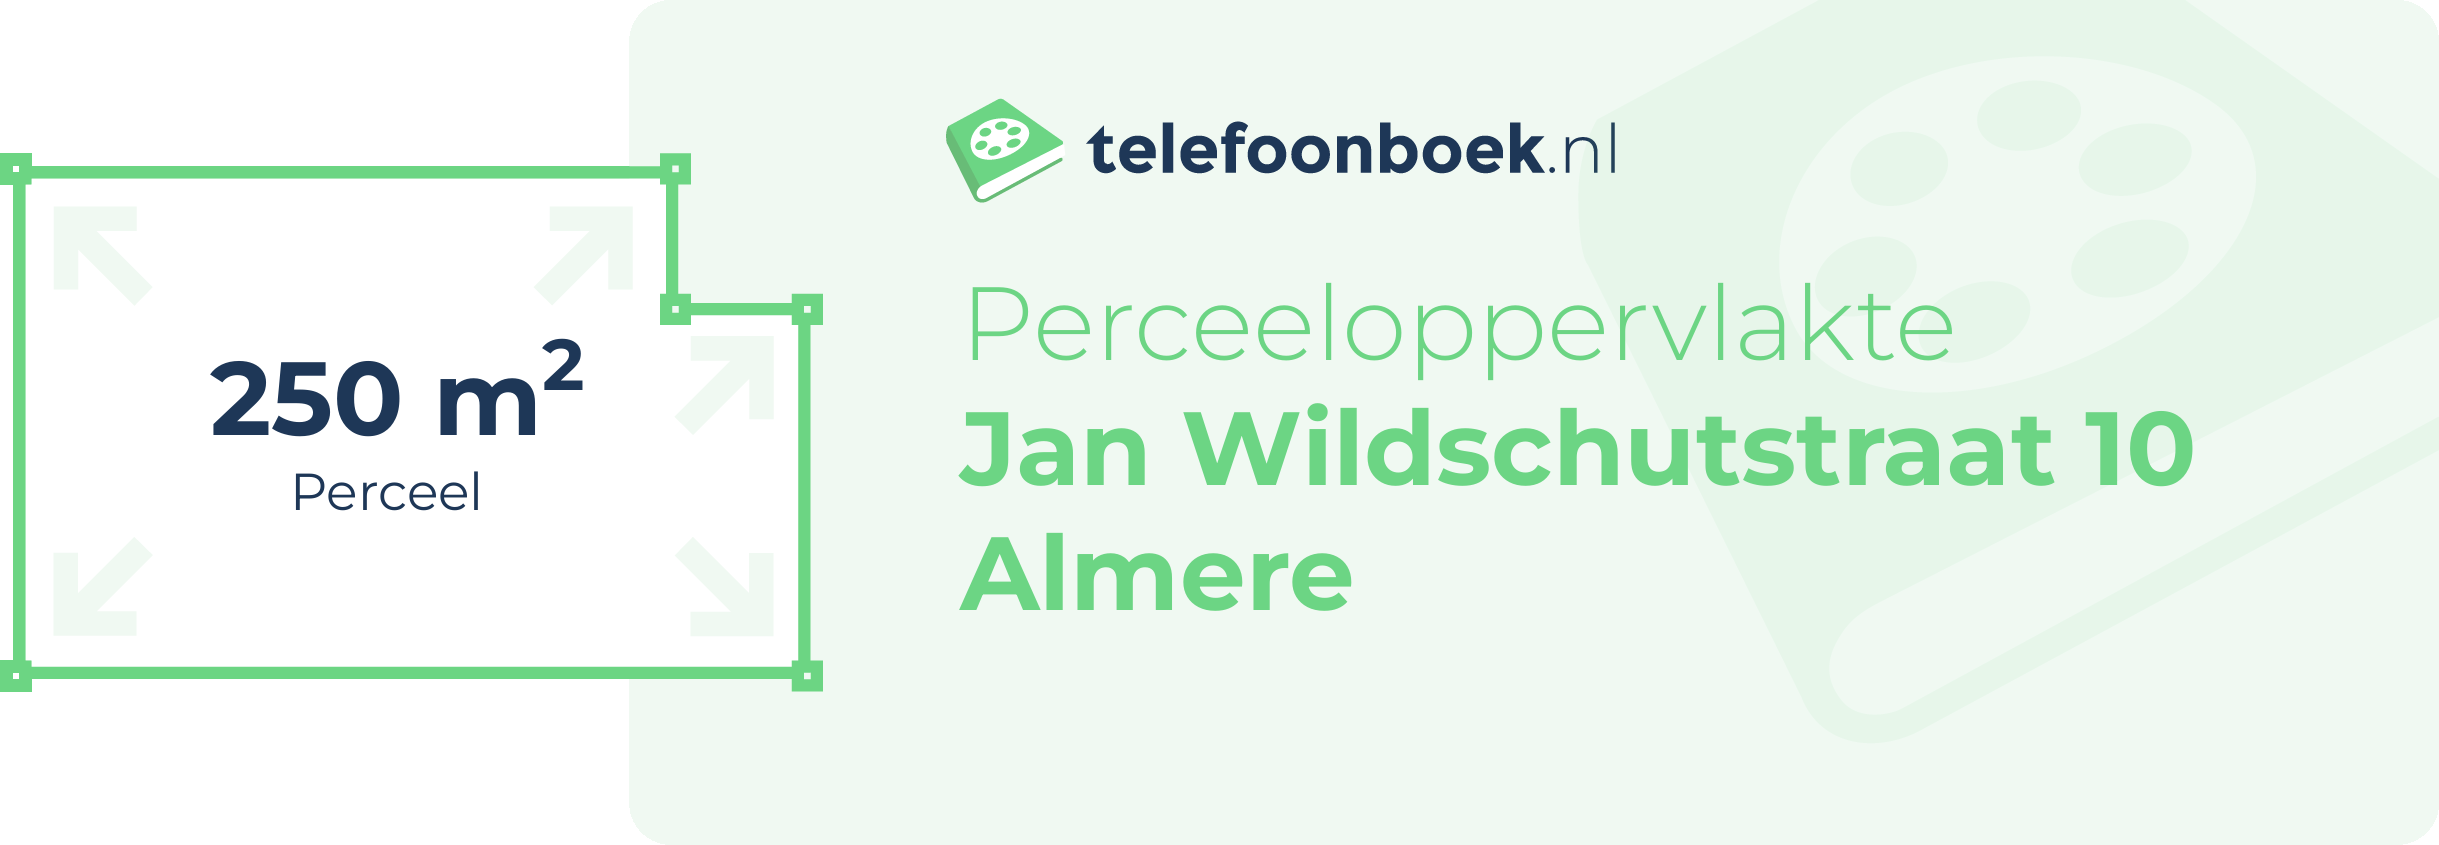 Perceeloppervlakte Jan Wildschutstraat 10 Almere